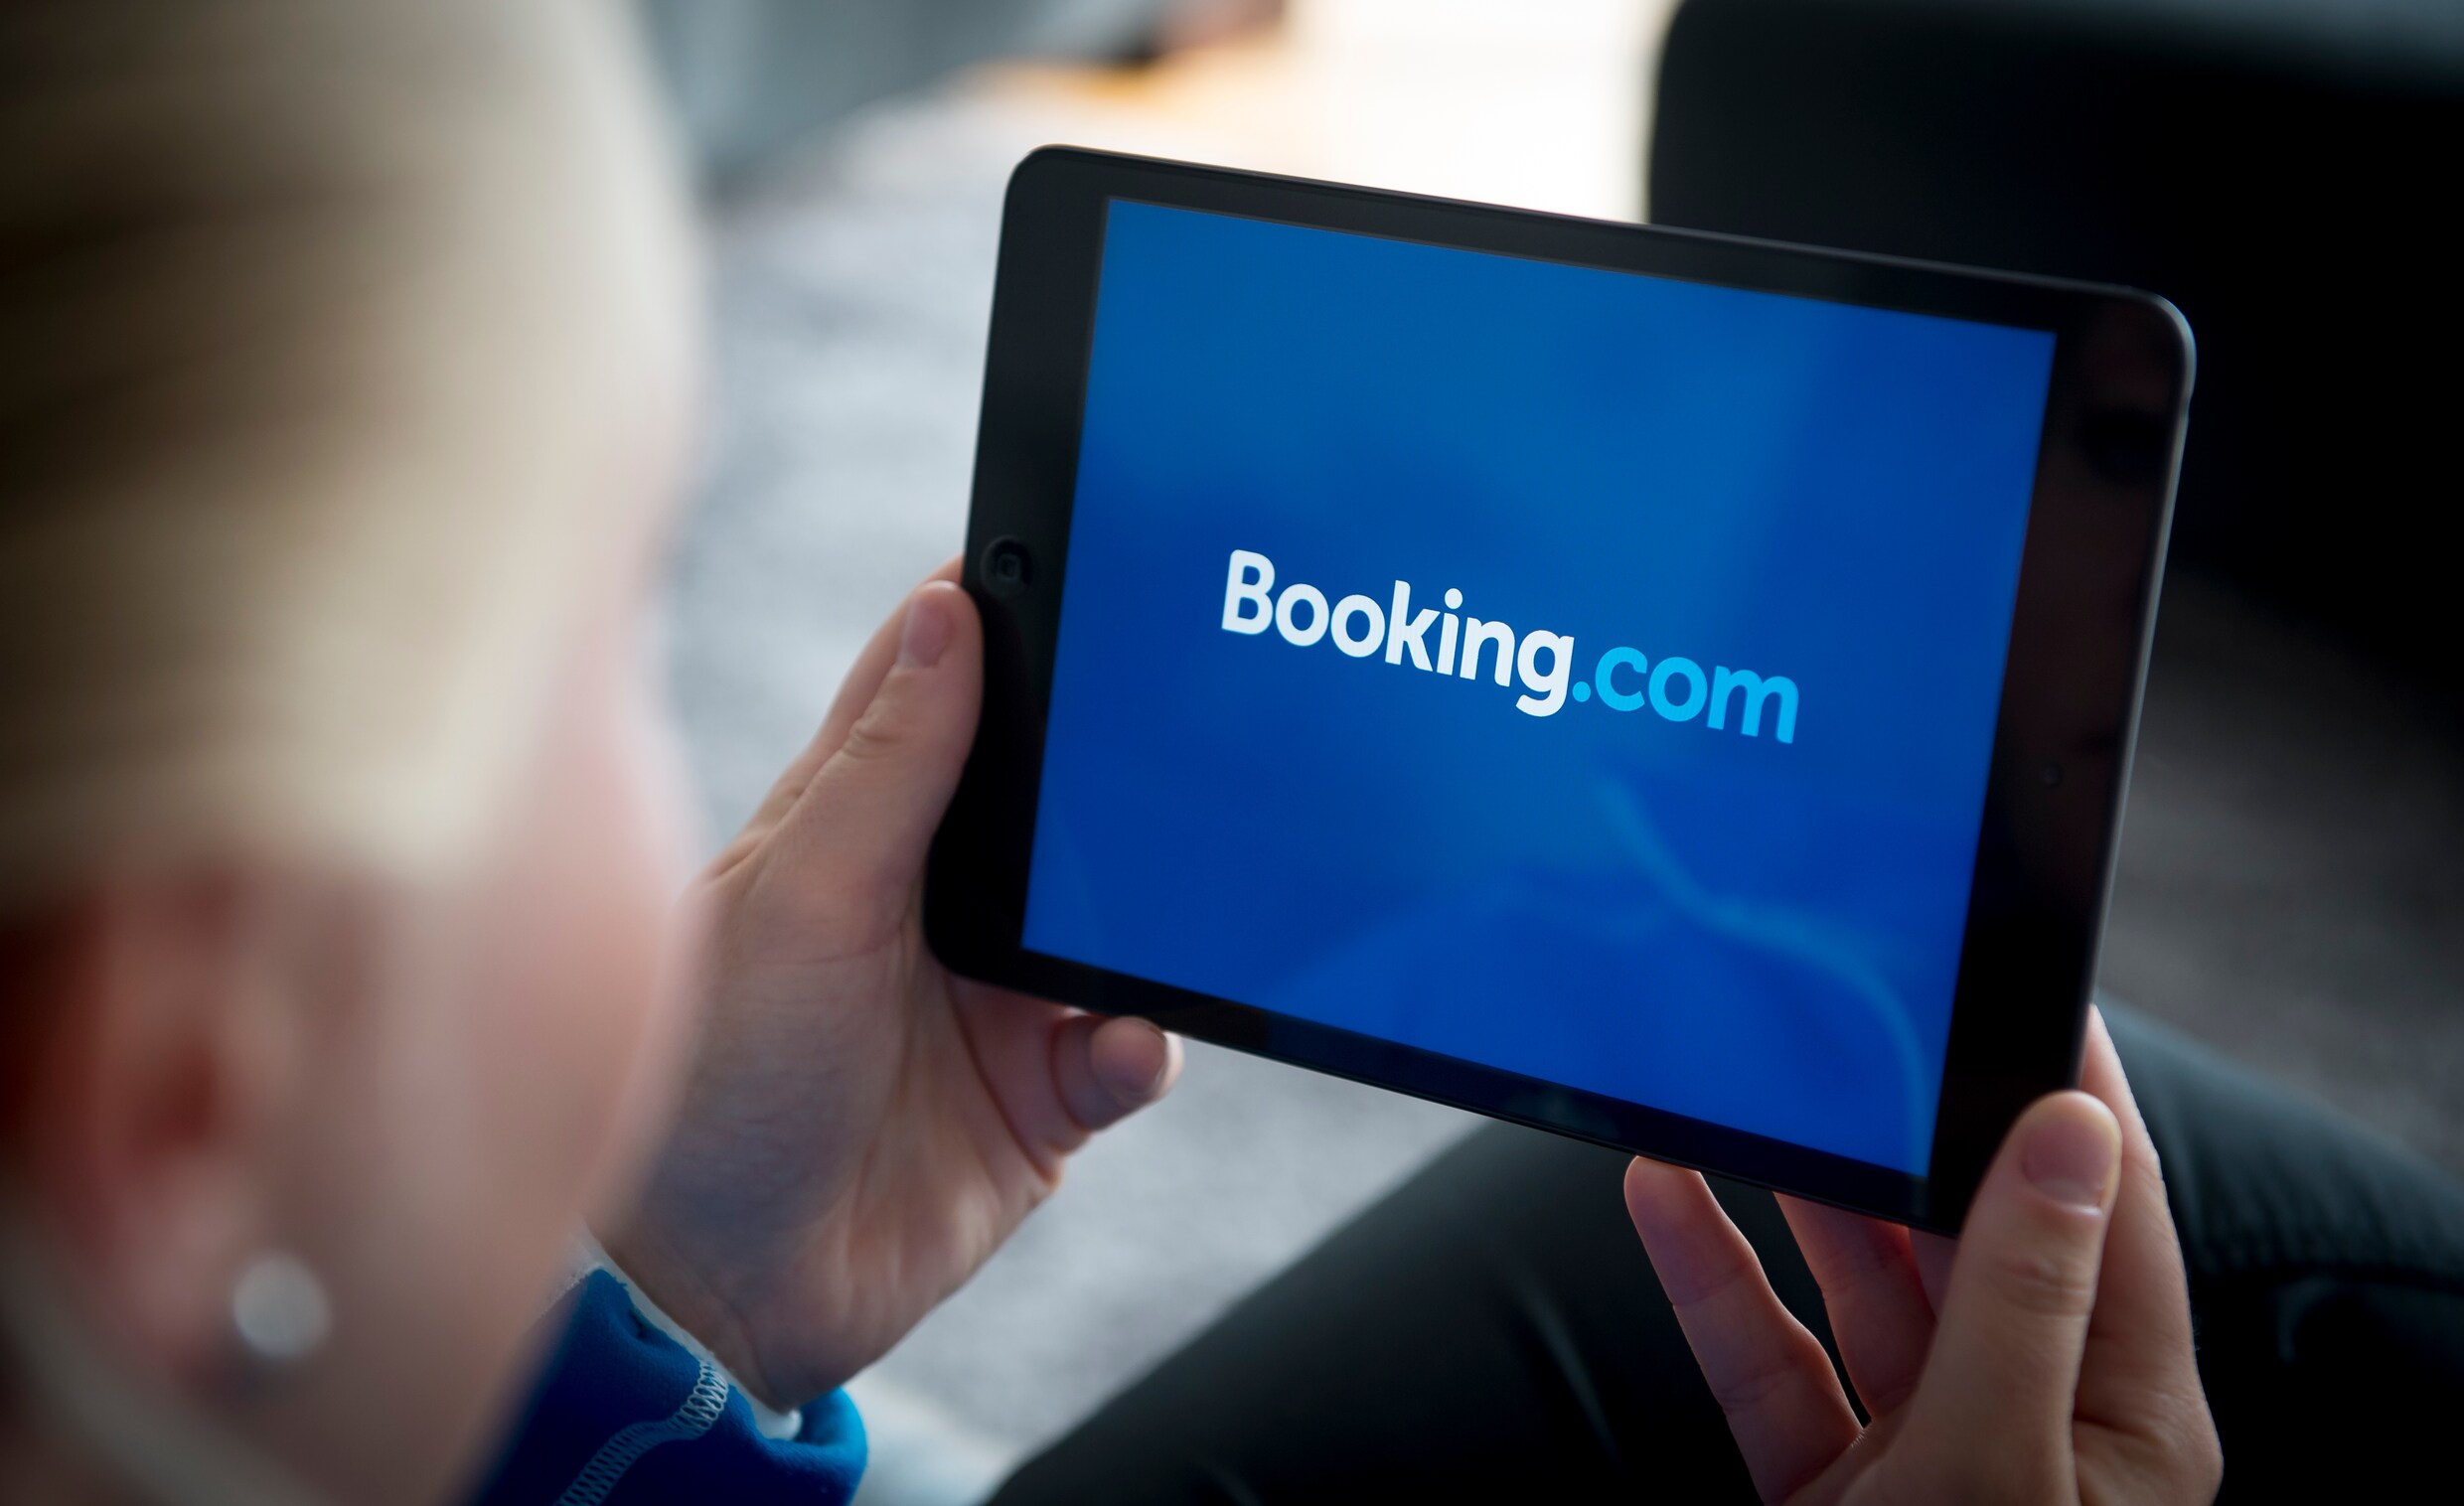 Hotels mogen op eigen site lagere prijzen aanbieden dan bij Booking.com